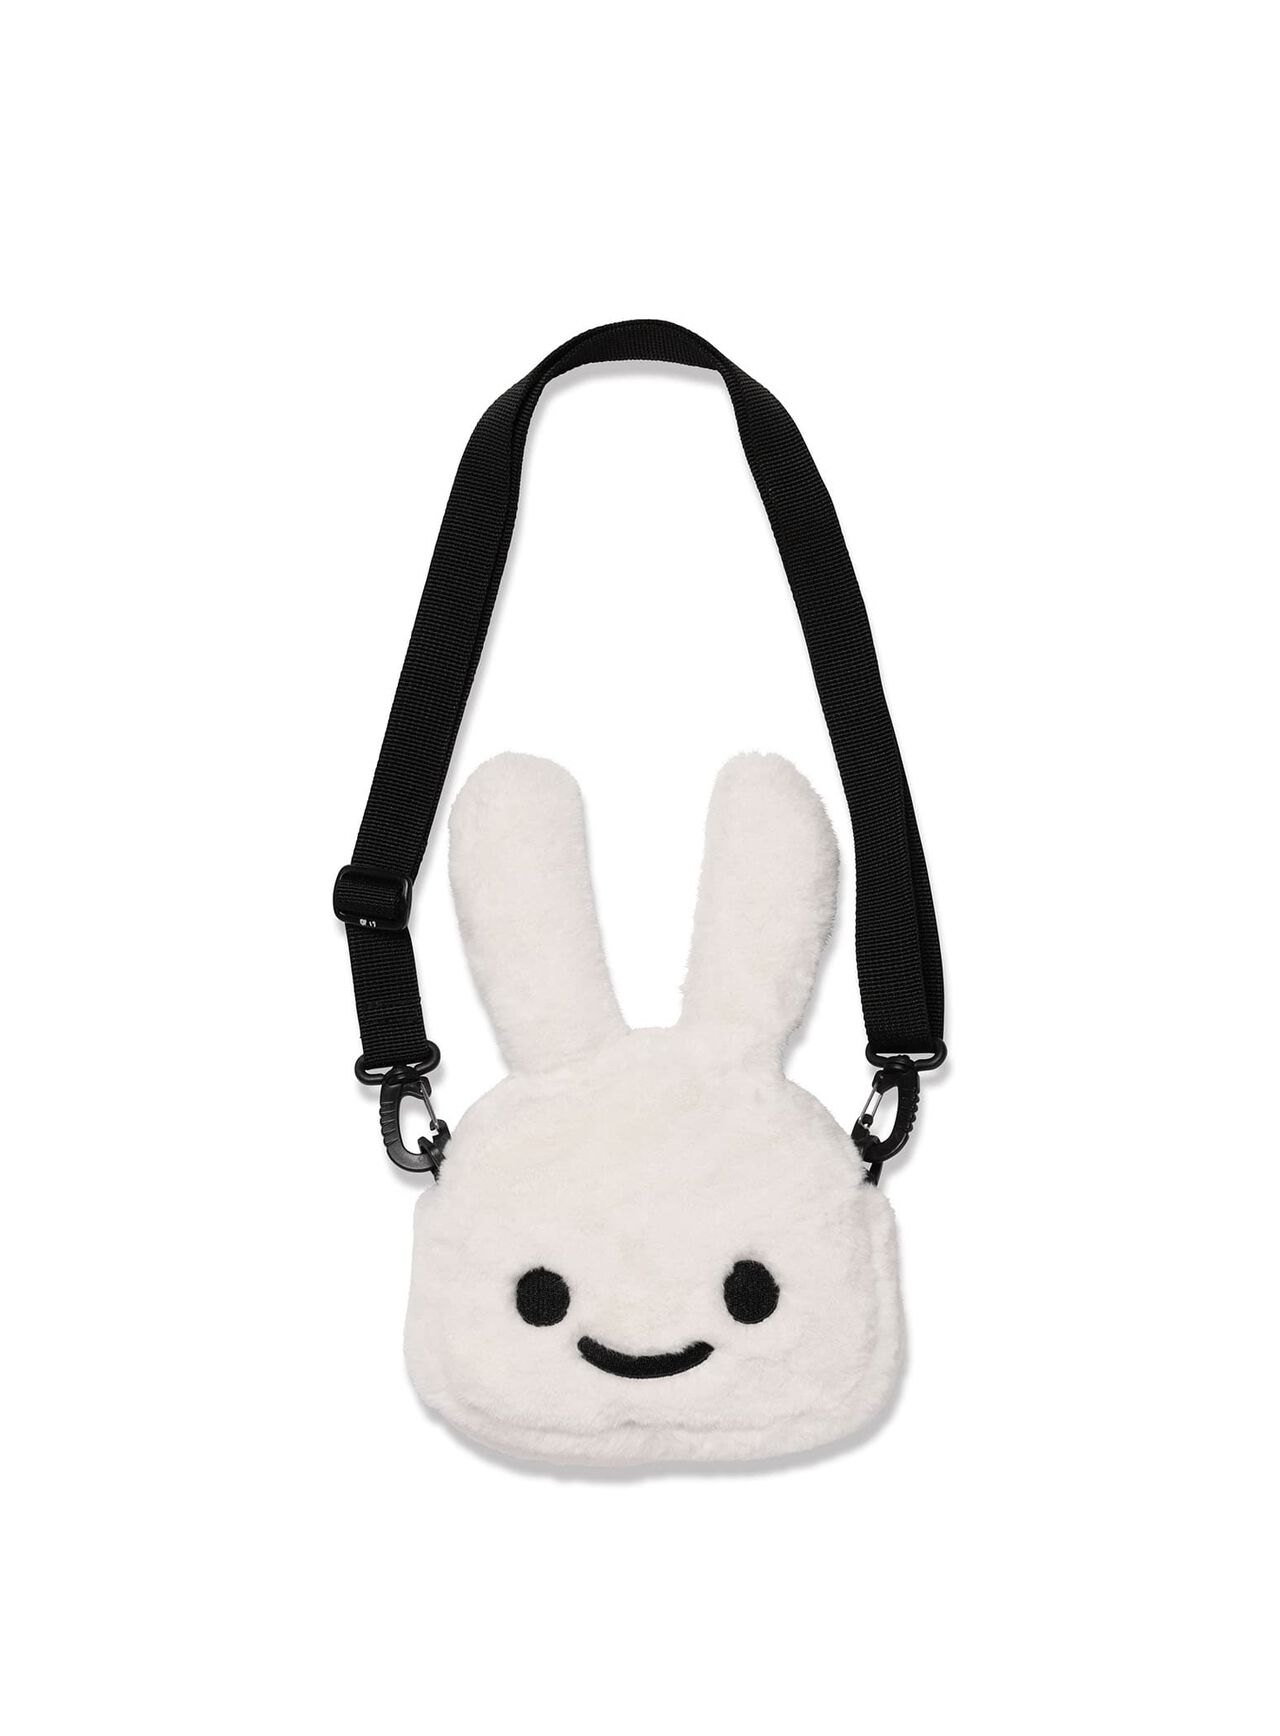 Fluffy Rabbit Shoulder Bag Small,ONE, large image number 0